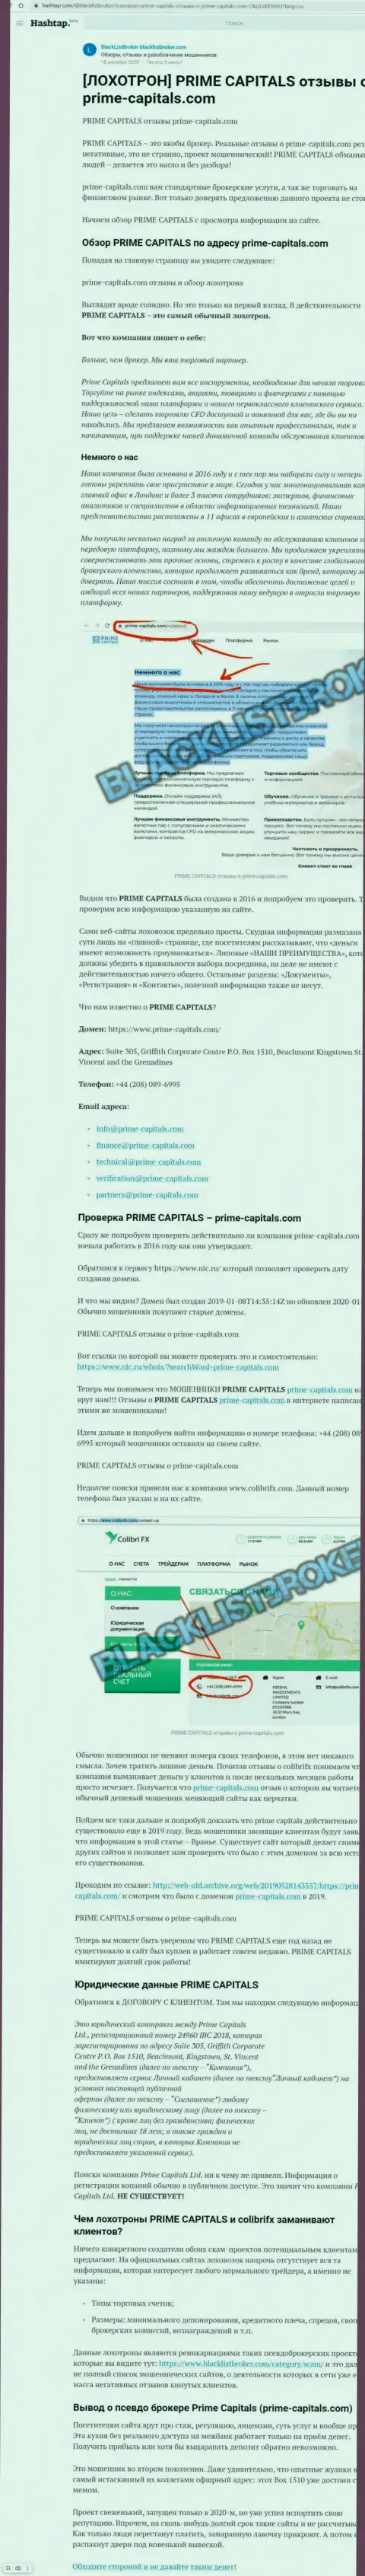 Prime Capitals - это нахальный обман своих клиентов (обзорная статья незаконных деяний)